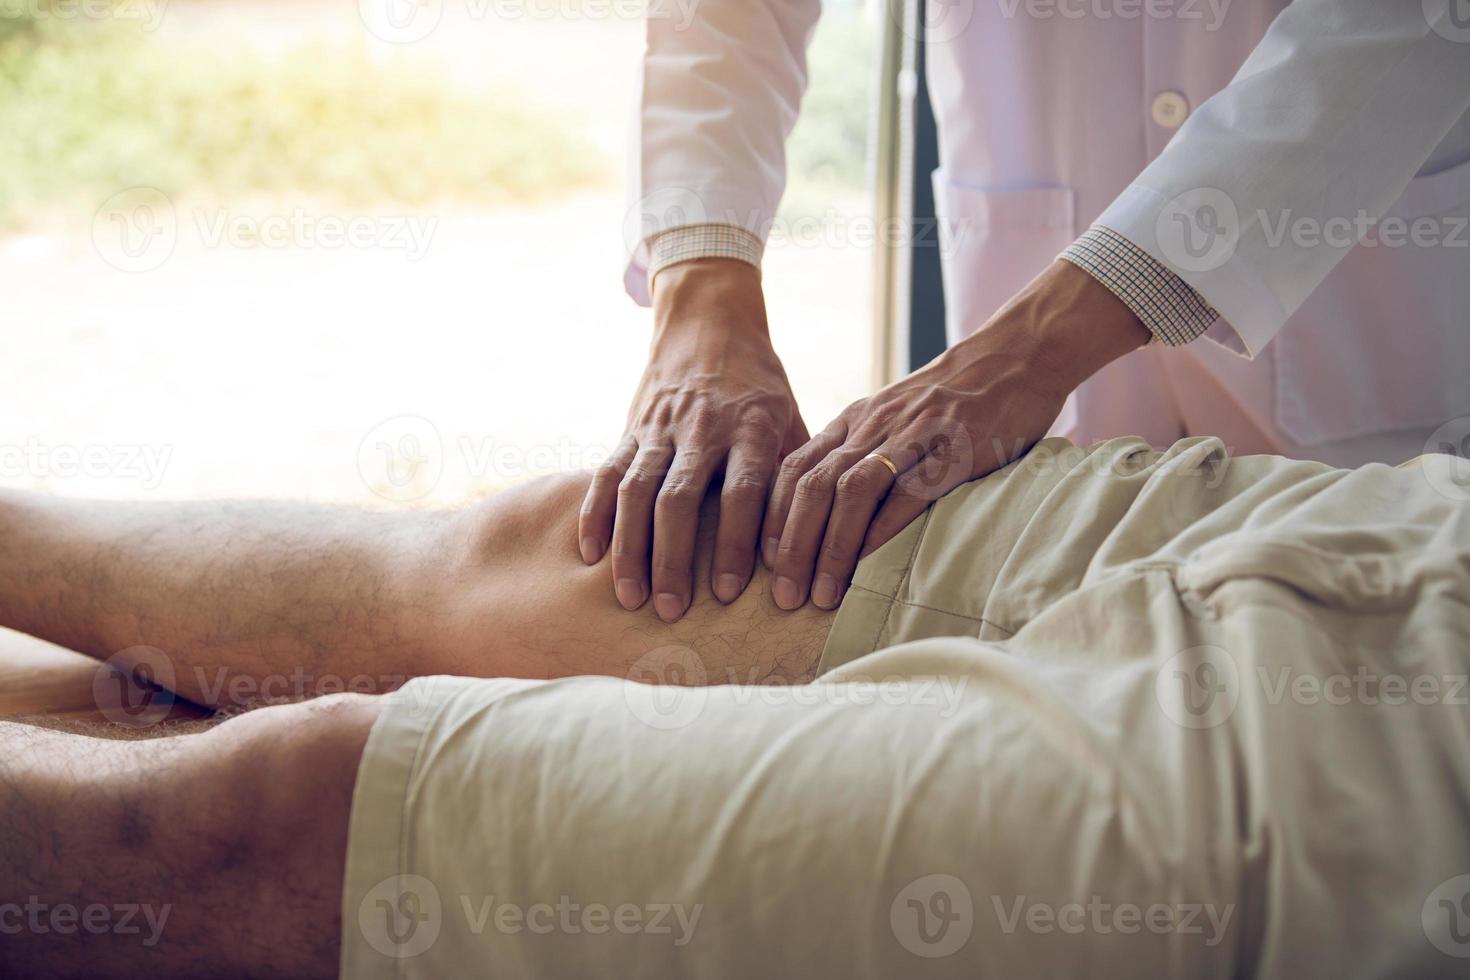 fysiotherapeuten gebruiken de handen om de dij van de patiënt vast te pakken om te controleren op pijn en massage in de kliniek. foto